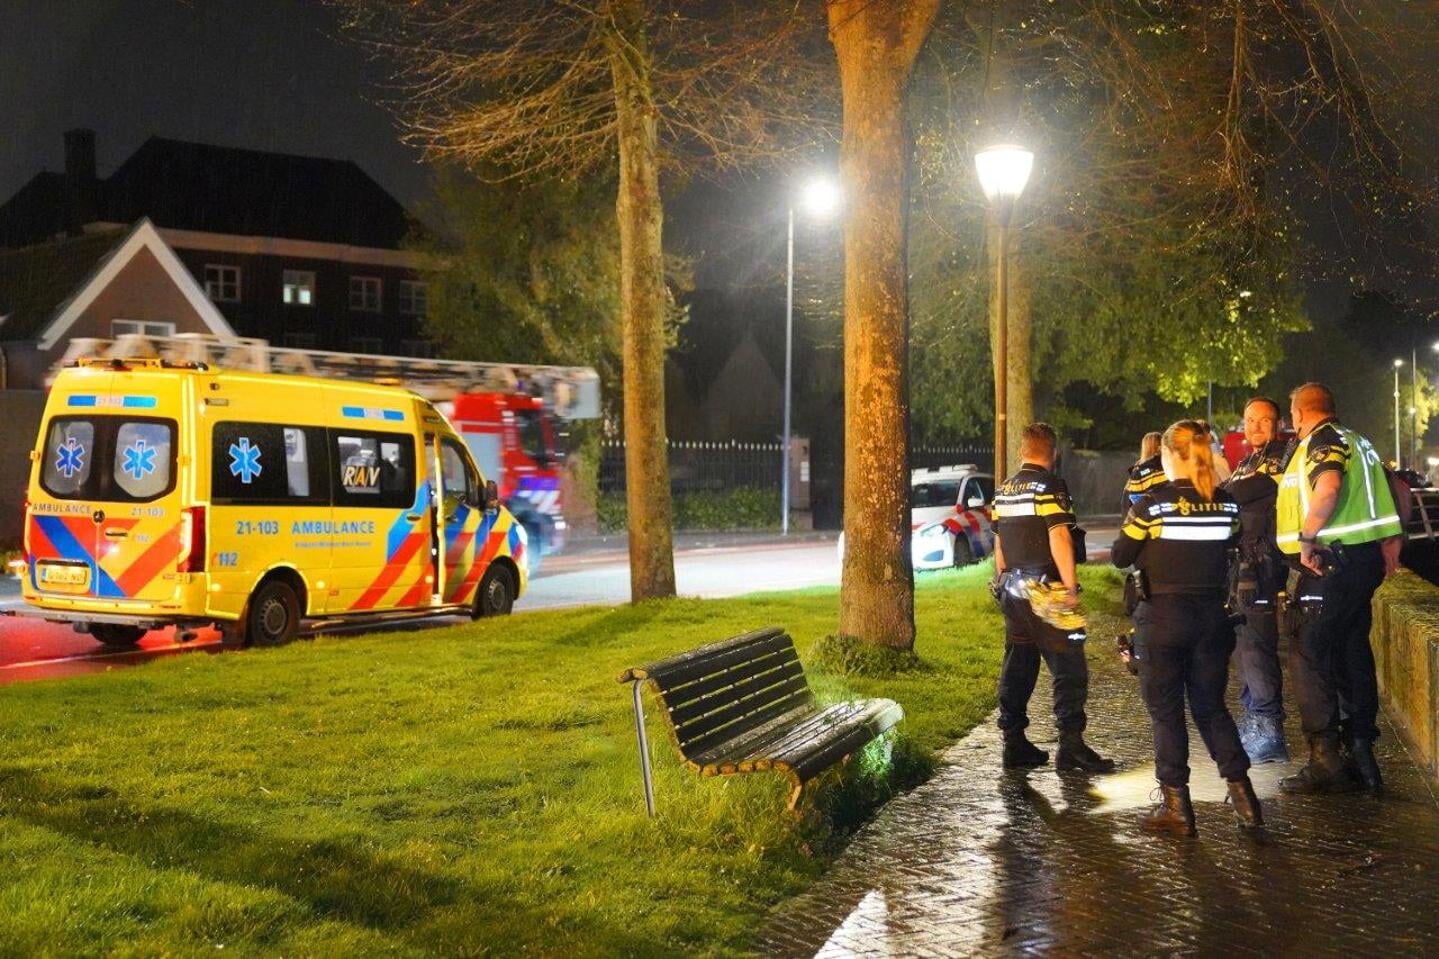 Aan de Zuidwal in Den Bosch is zondagavond rond 23.30 uur een jongeman van de stadsmuur afgevallen en deels in het water beland.